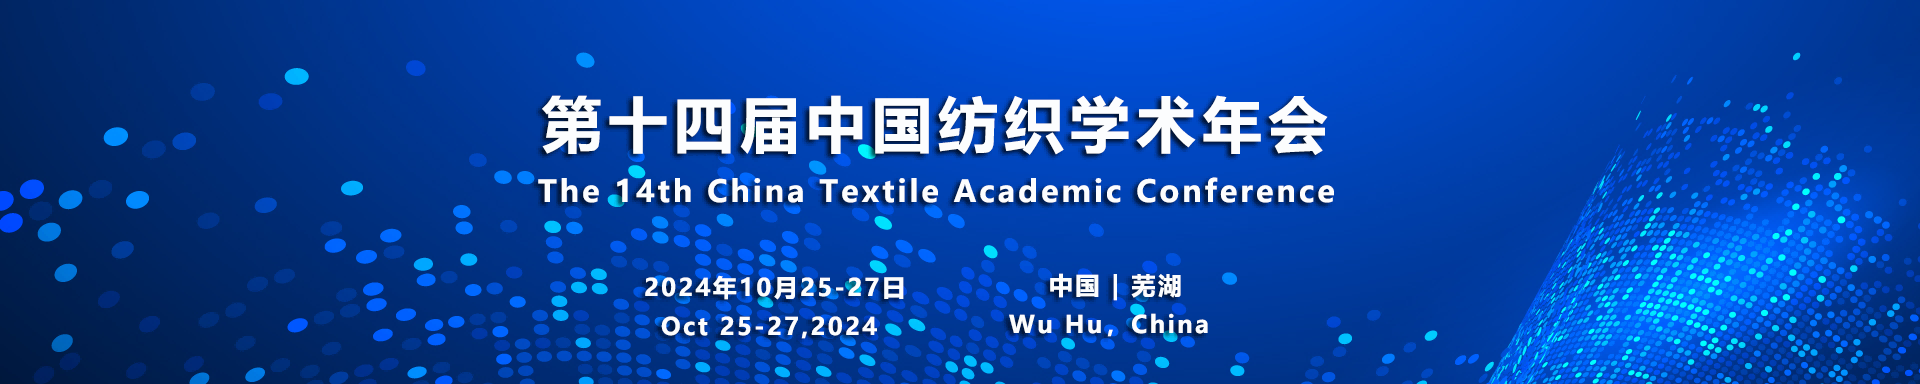 征文通知 - 第十四届中国纺织学术年会